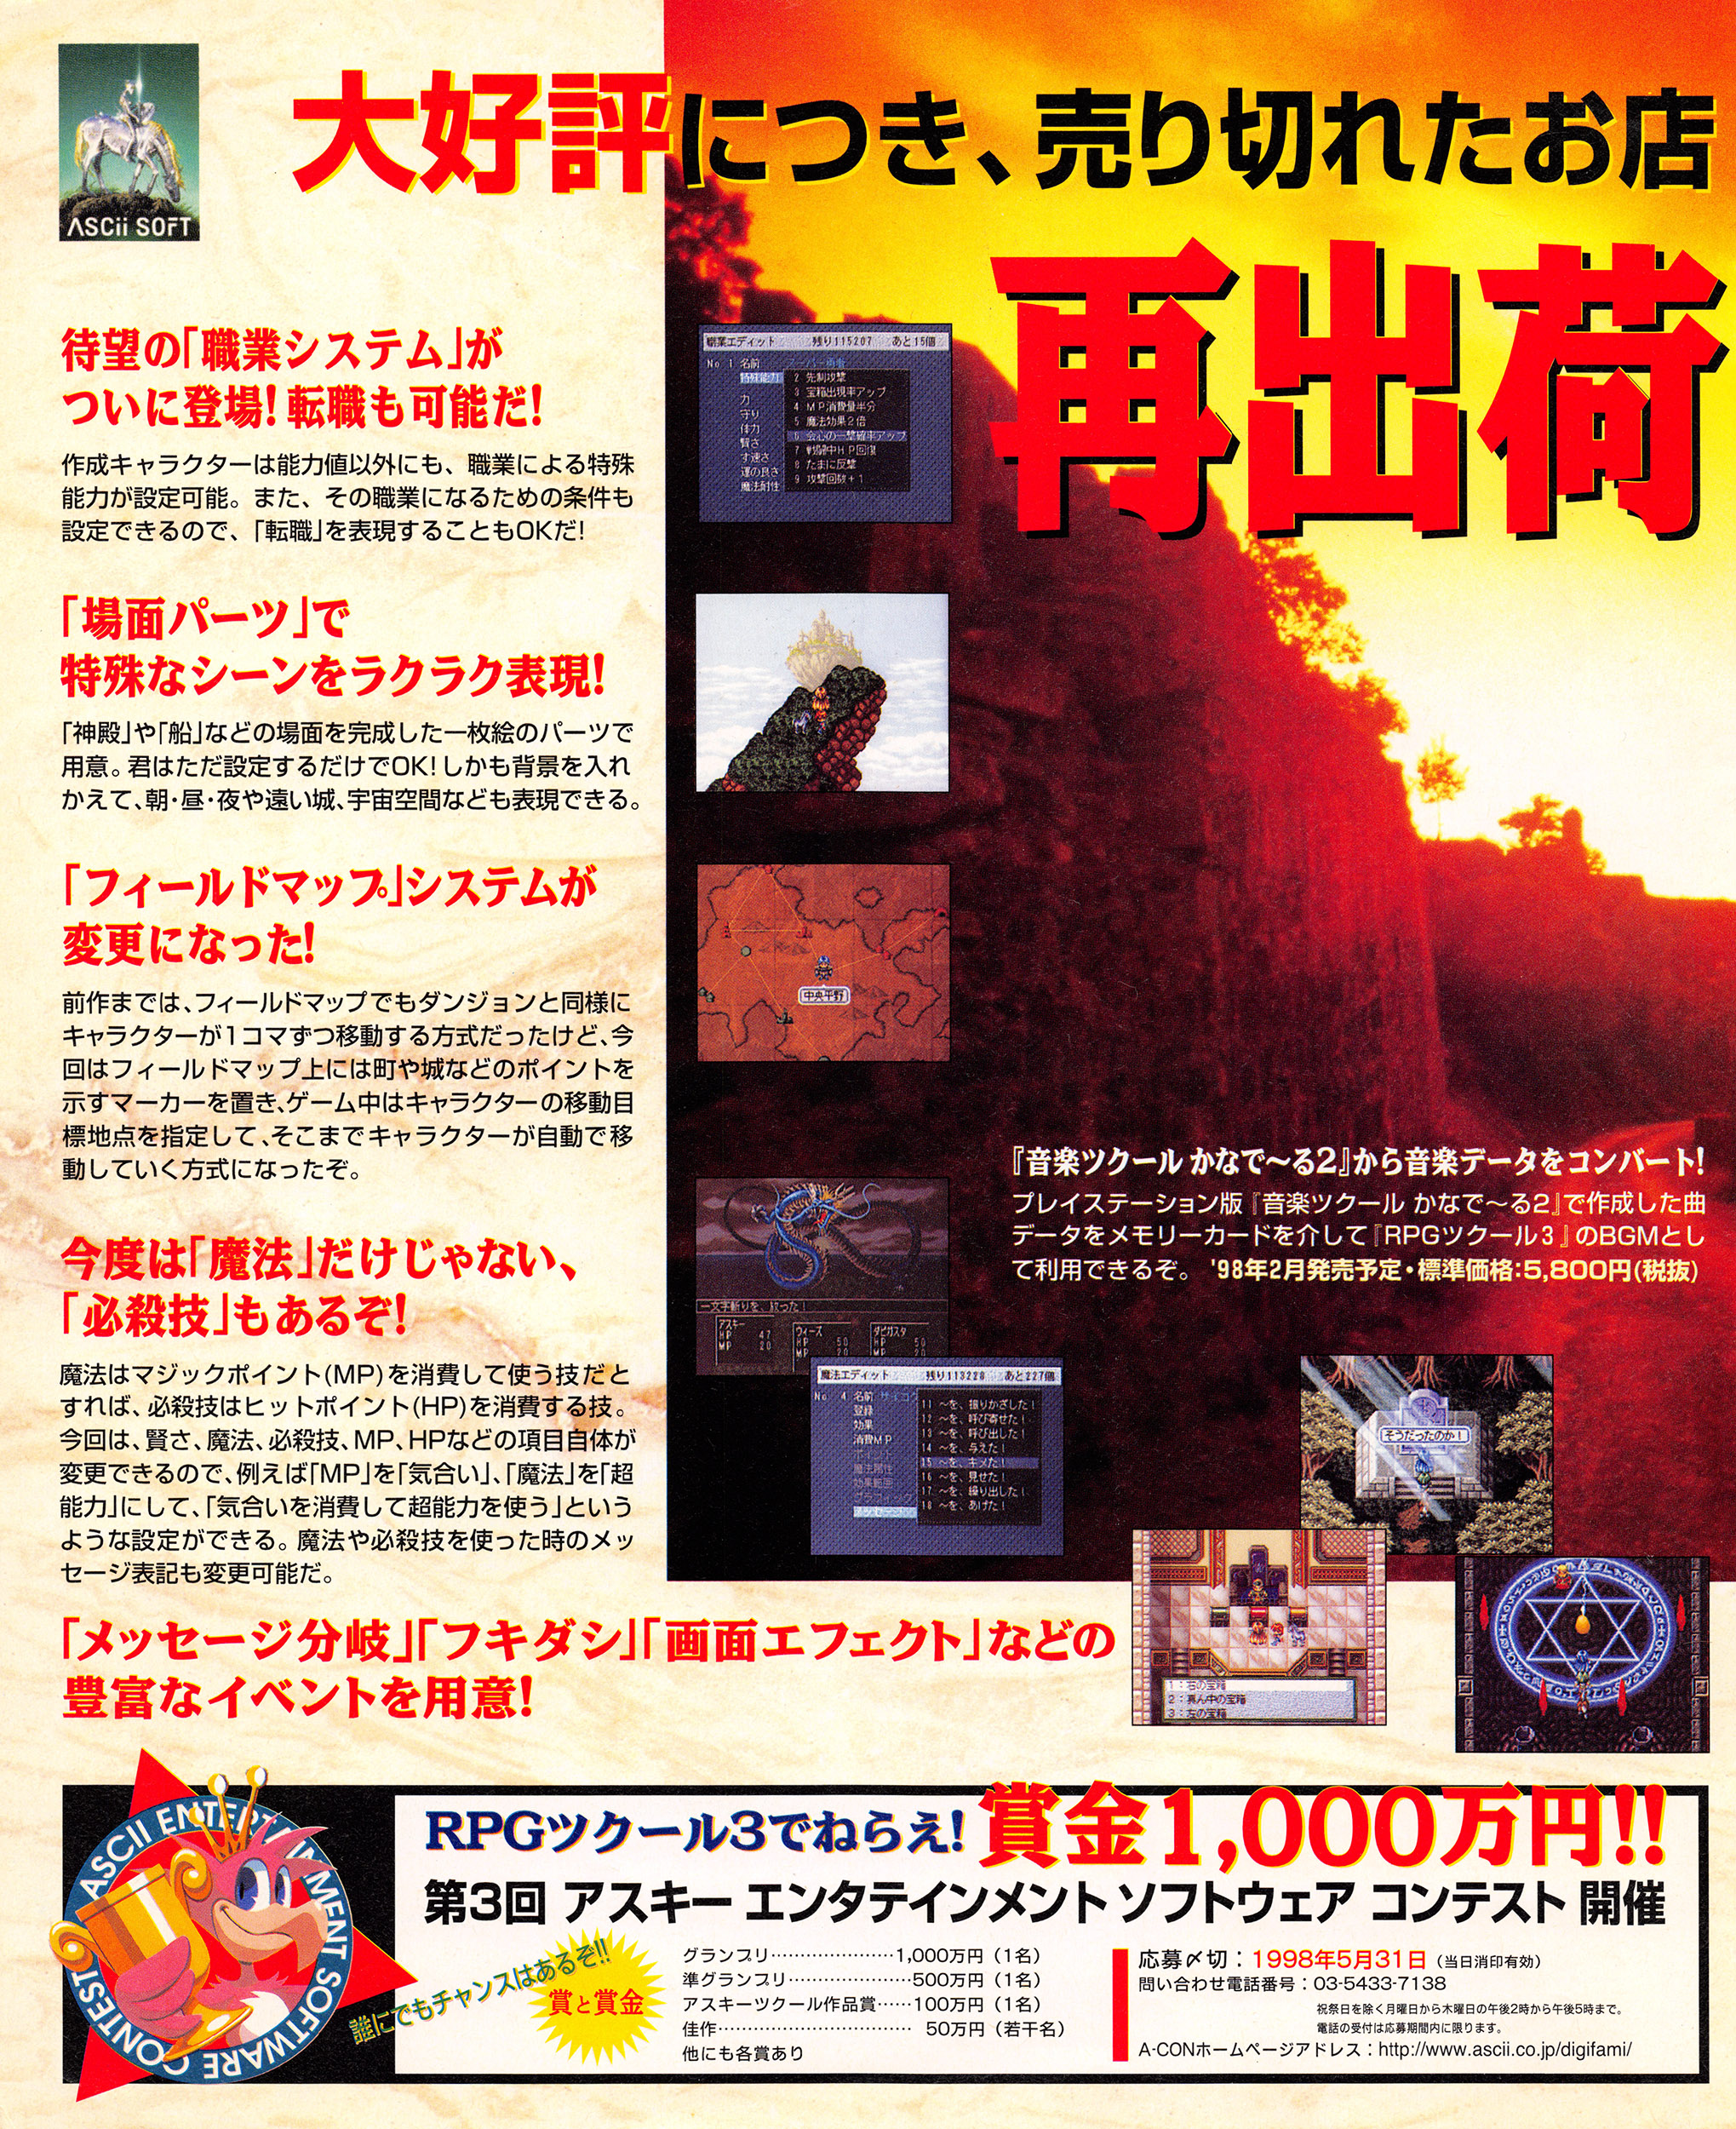 RPG Tsukuru 3 PSX cover